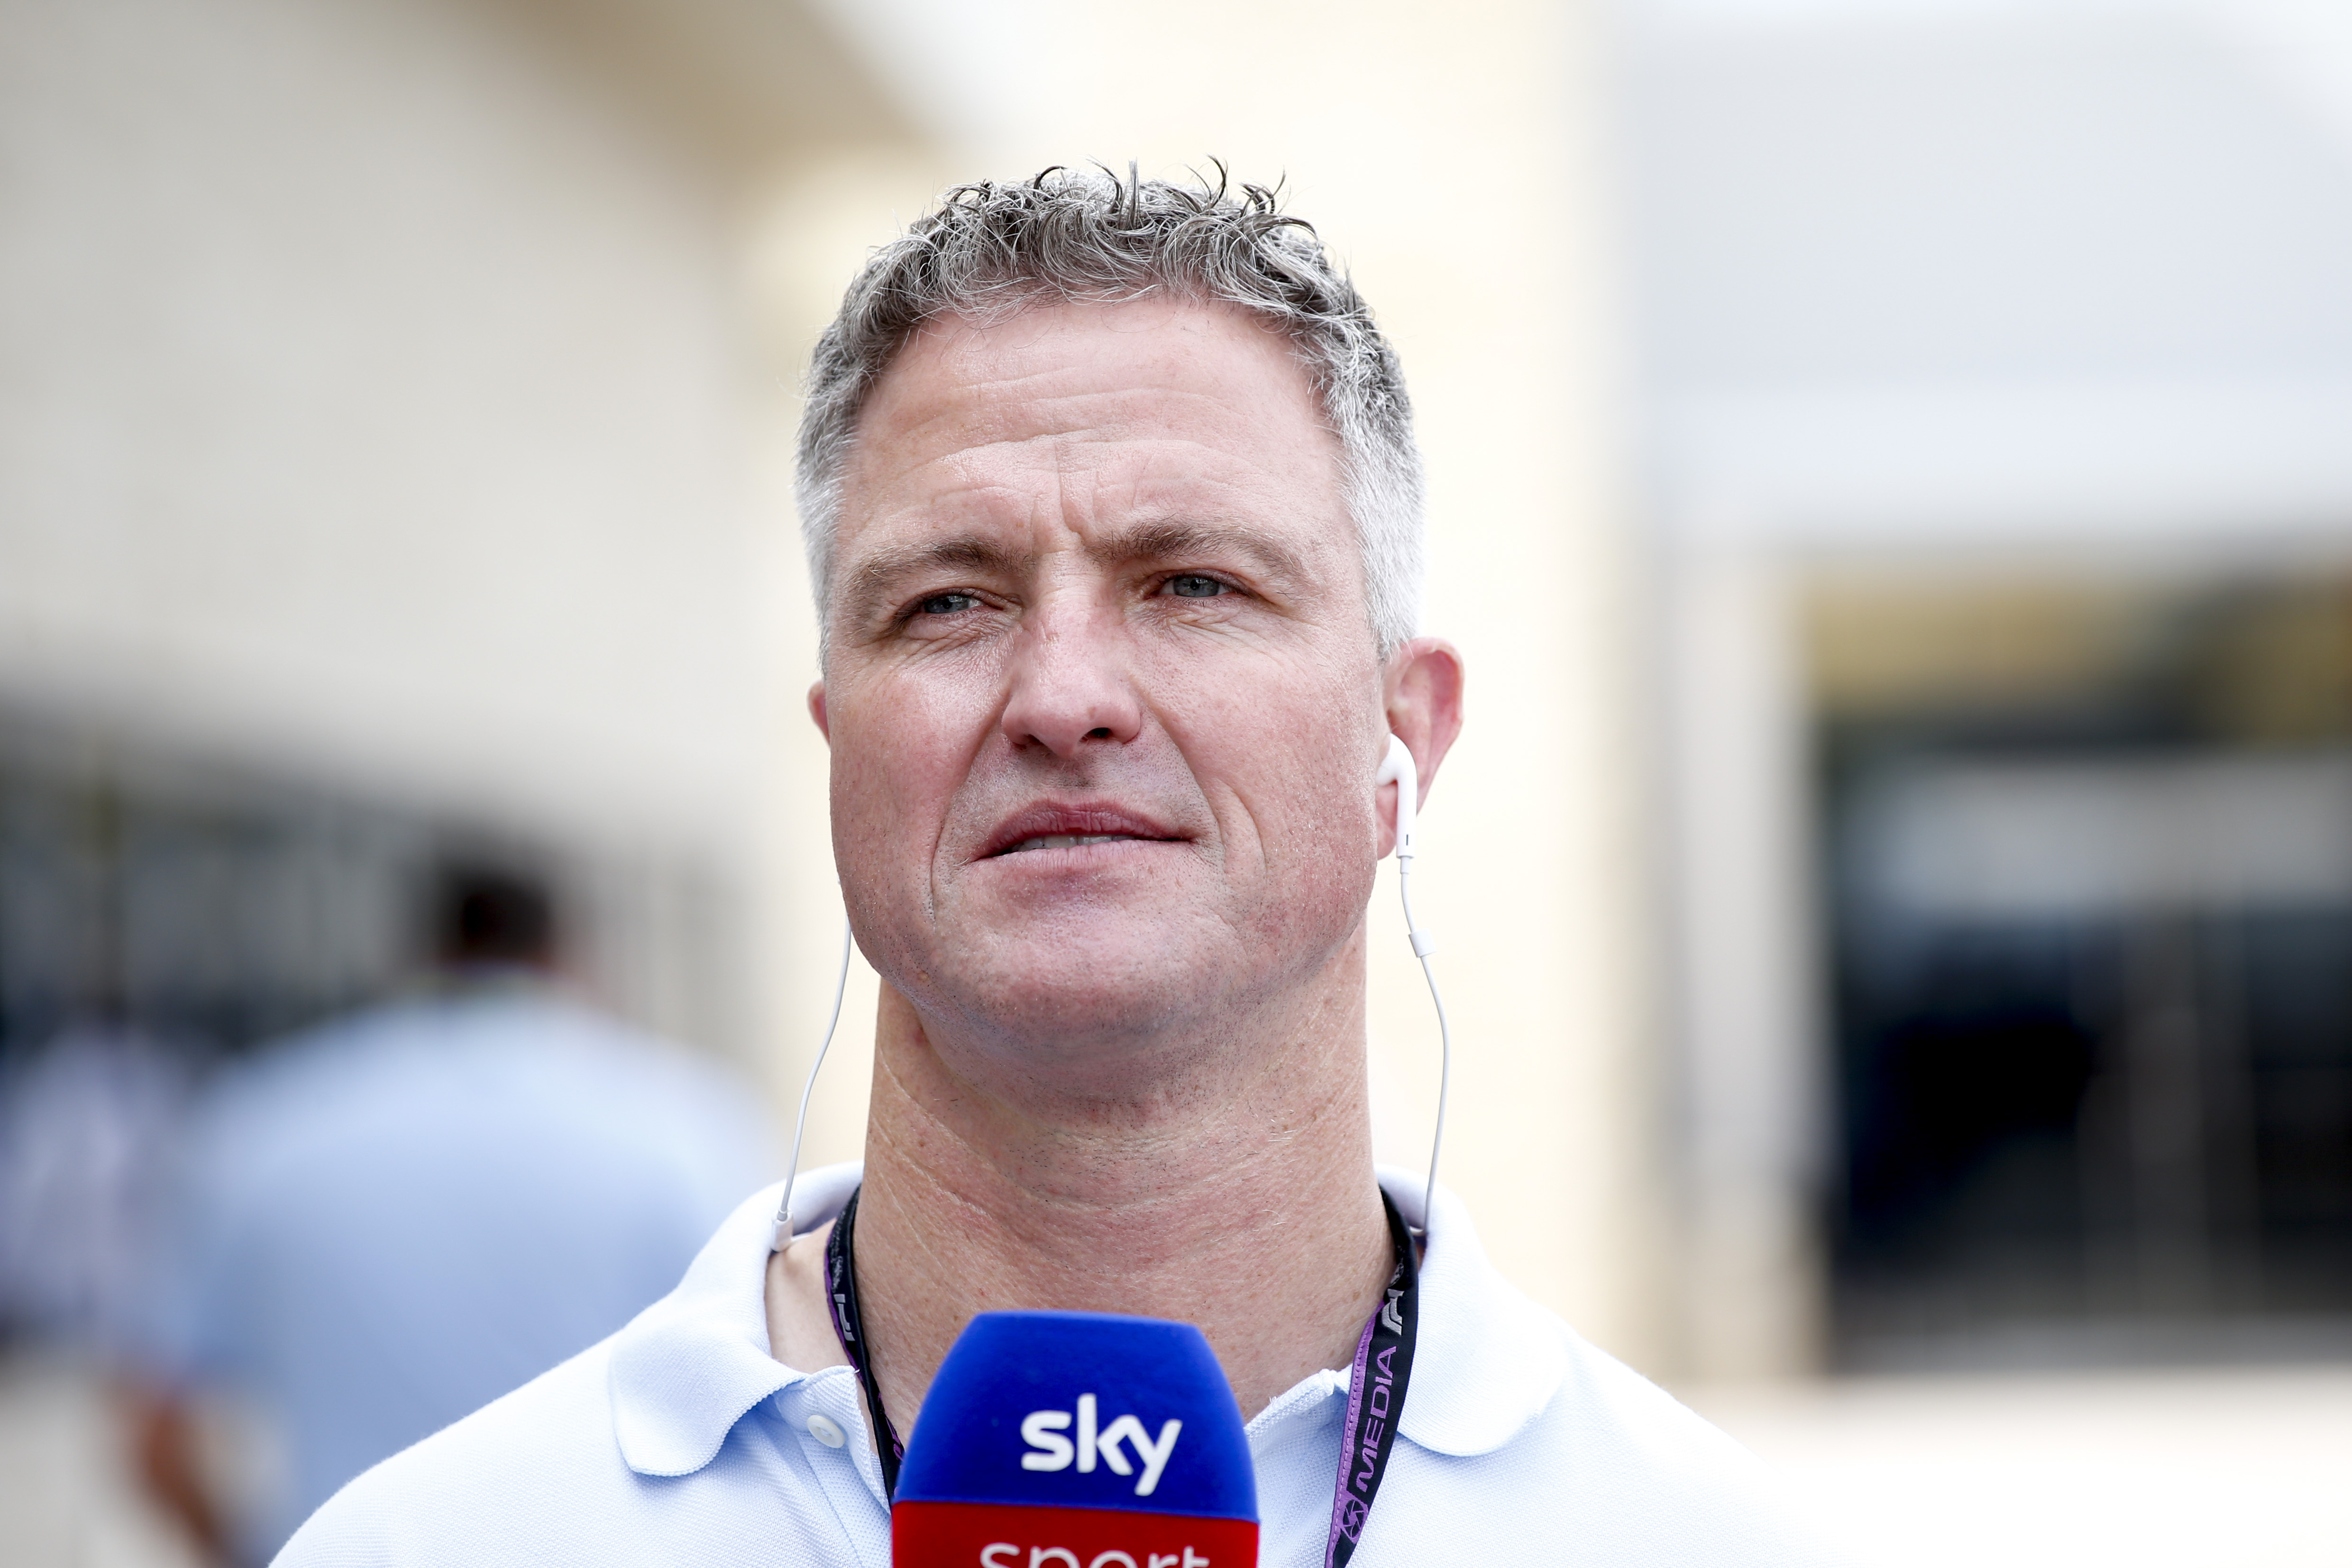 Heiko Waßer schießt gegen Sky Ralf Schumacher findet Aussagen „einfach nur peinlich“